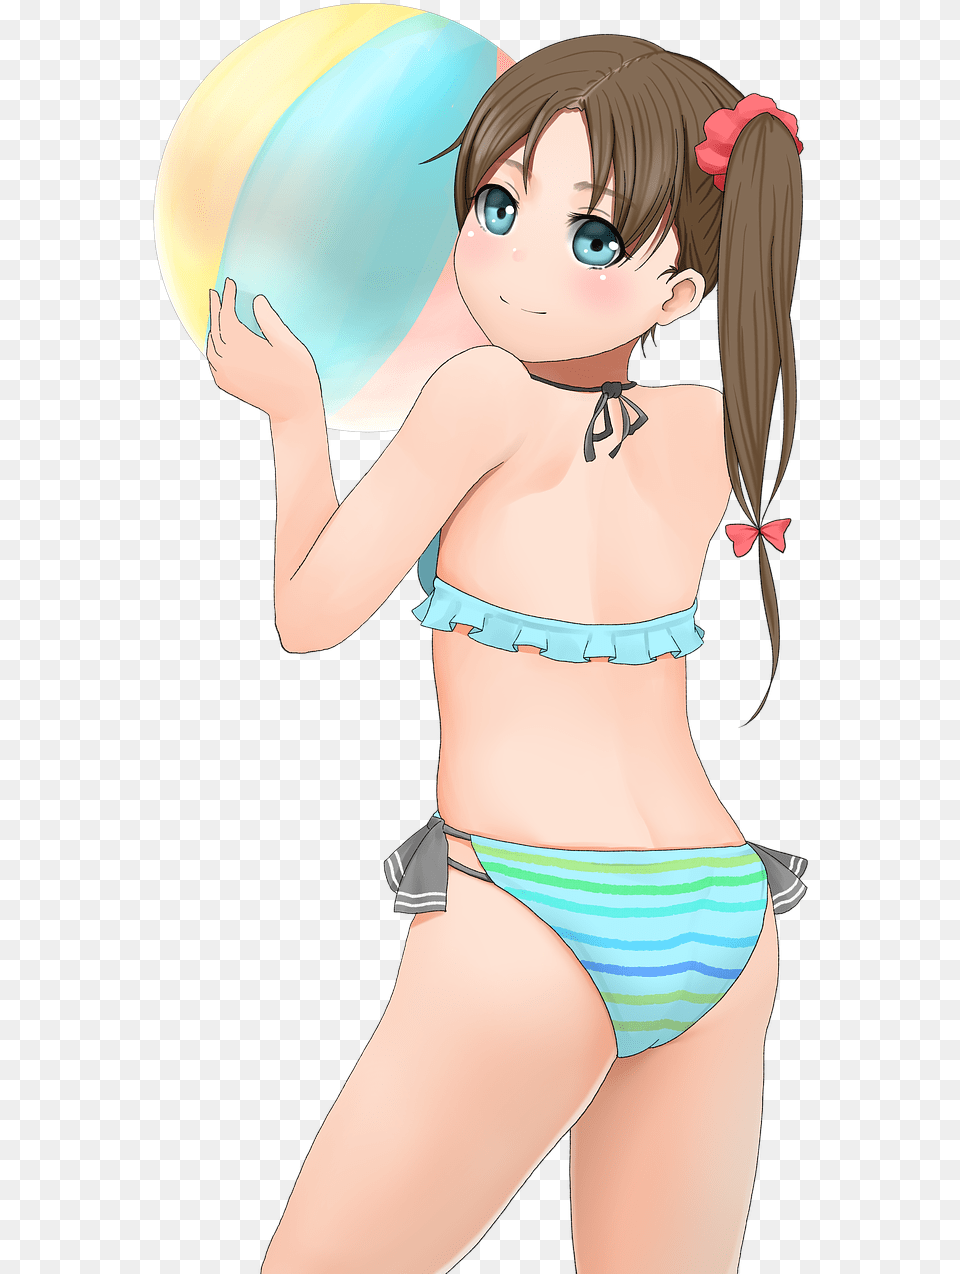 Woman In Bikini Cute Anime Girls In Bikini, Swimwear, Clothing, Adult, Publication Png Image